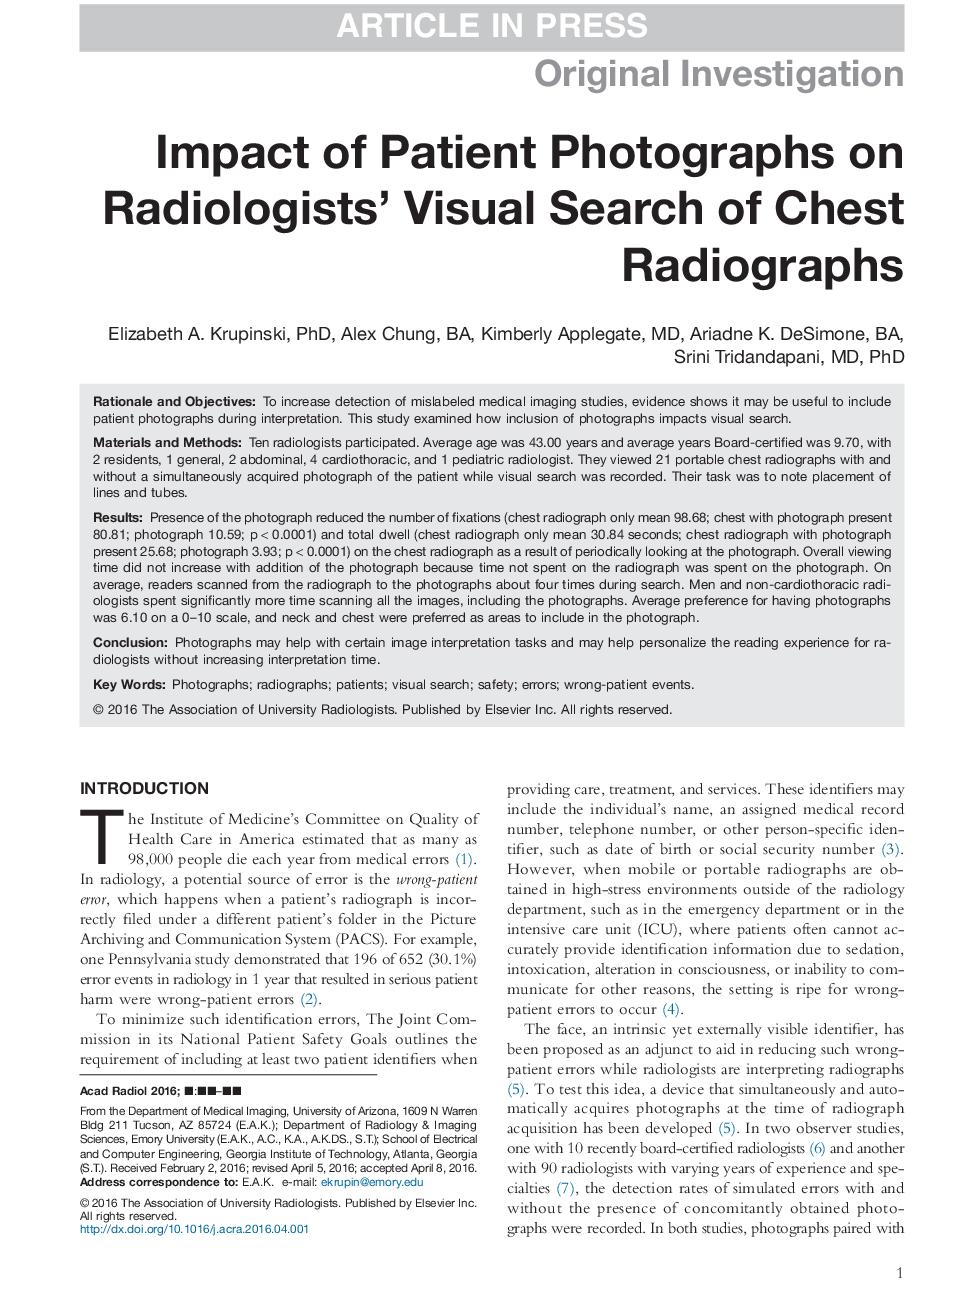 تاثیر عکس های بیمار بر جستجوی تصویری رادیولوژیست در رادیوگرافی قفسه سینه 